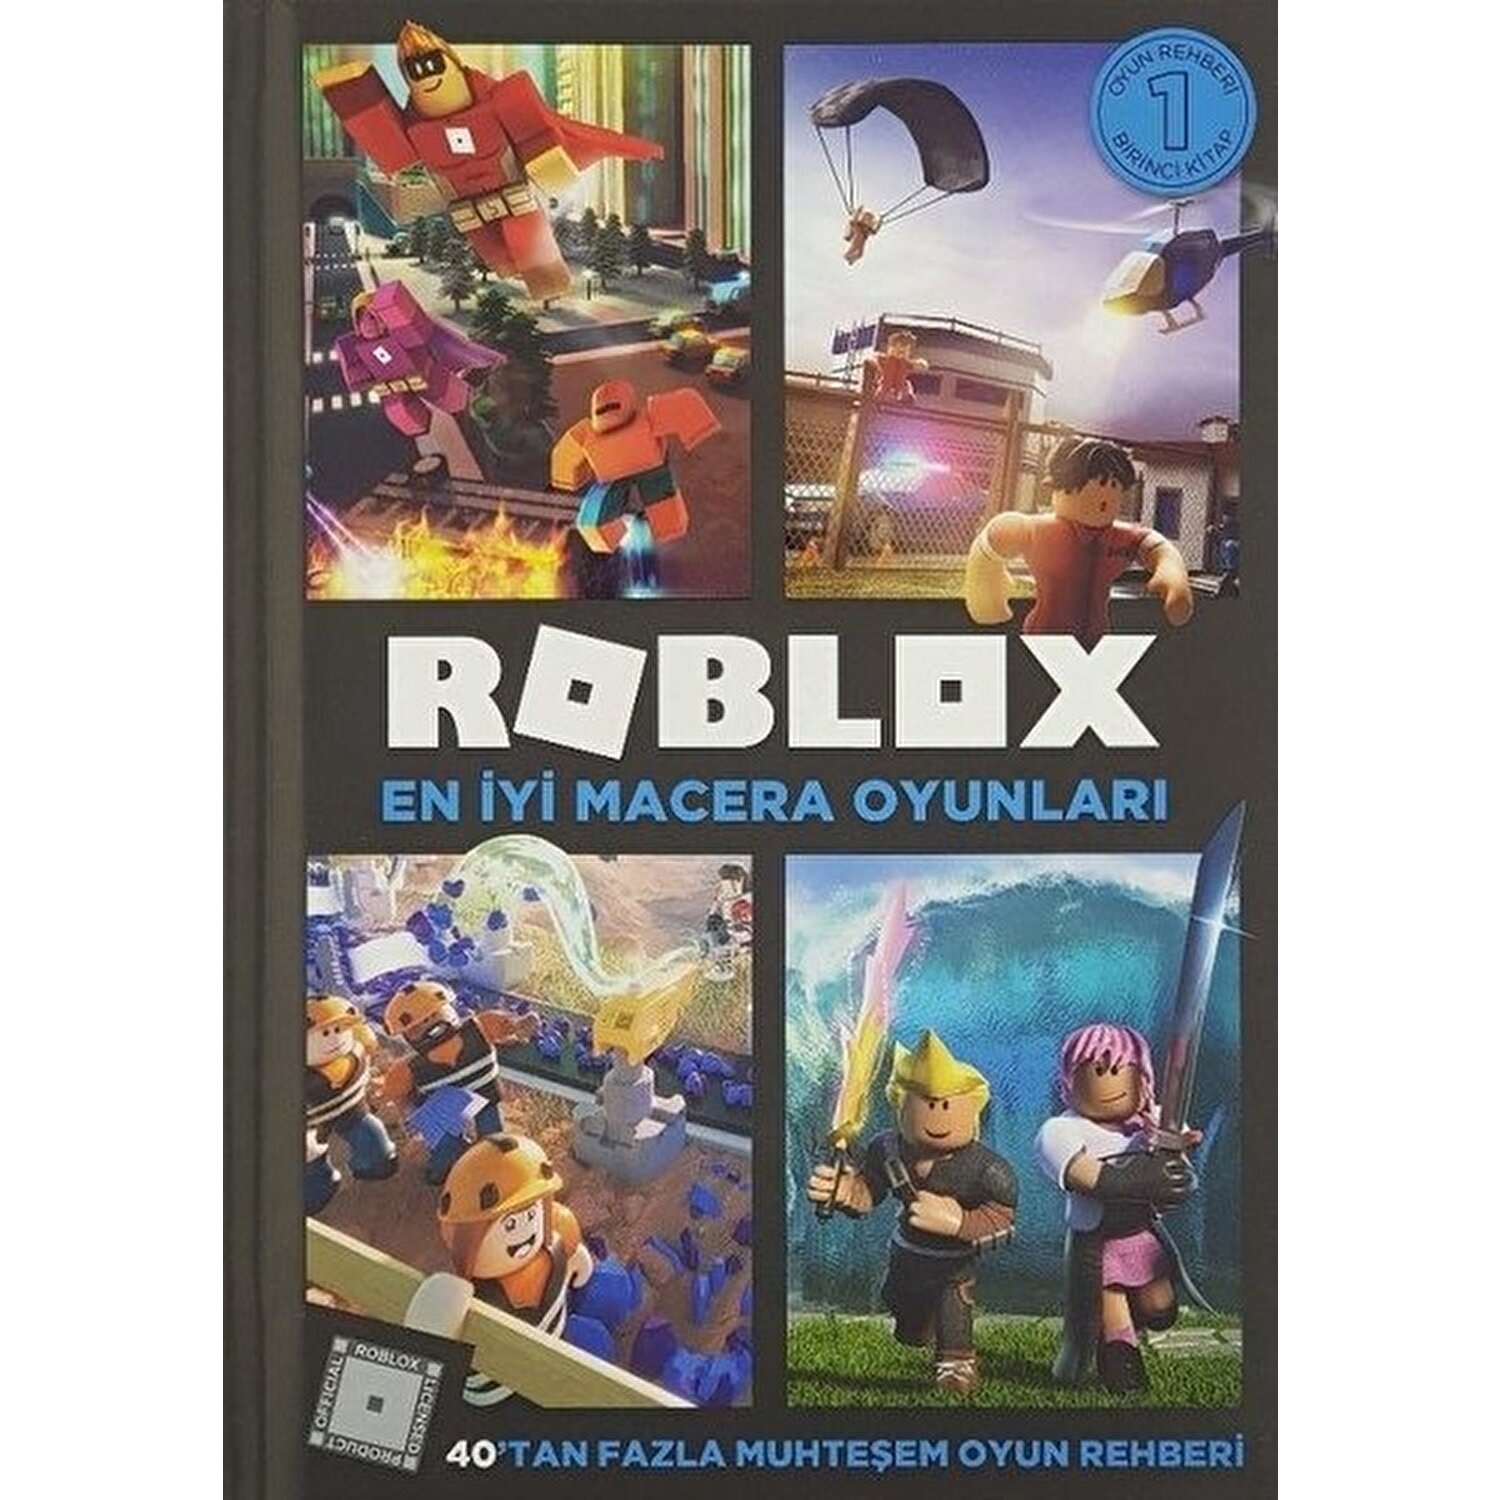 Roblox En Iyi Macera Oyunlari Kolektif Kitabi Ve Fiyati - roblox en iyi macera oyunları turkish edition kolektif